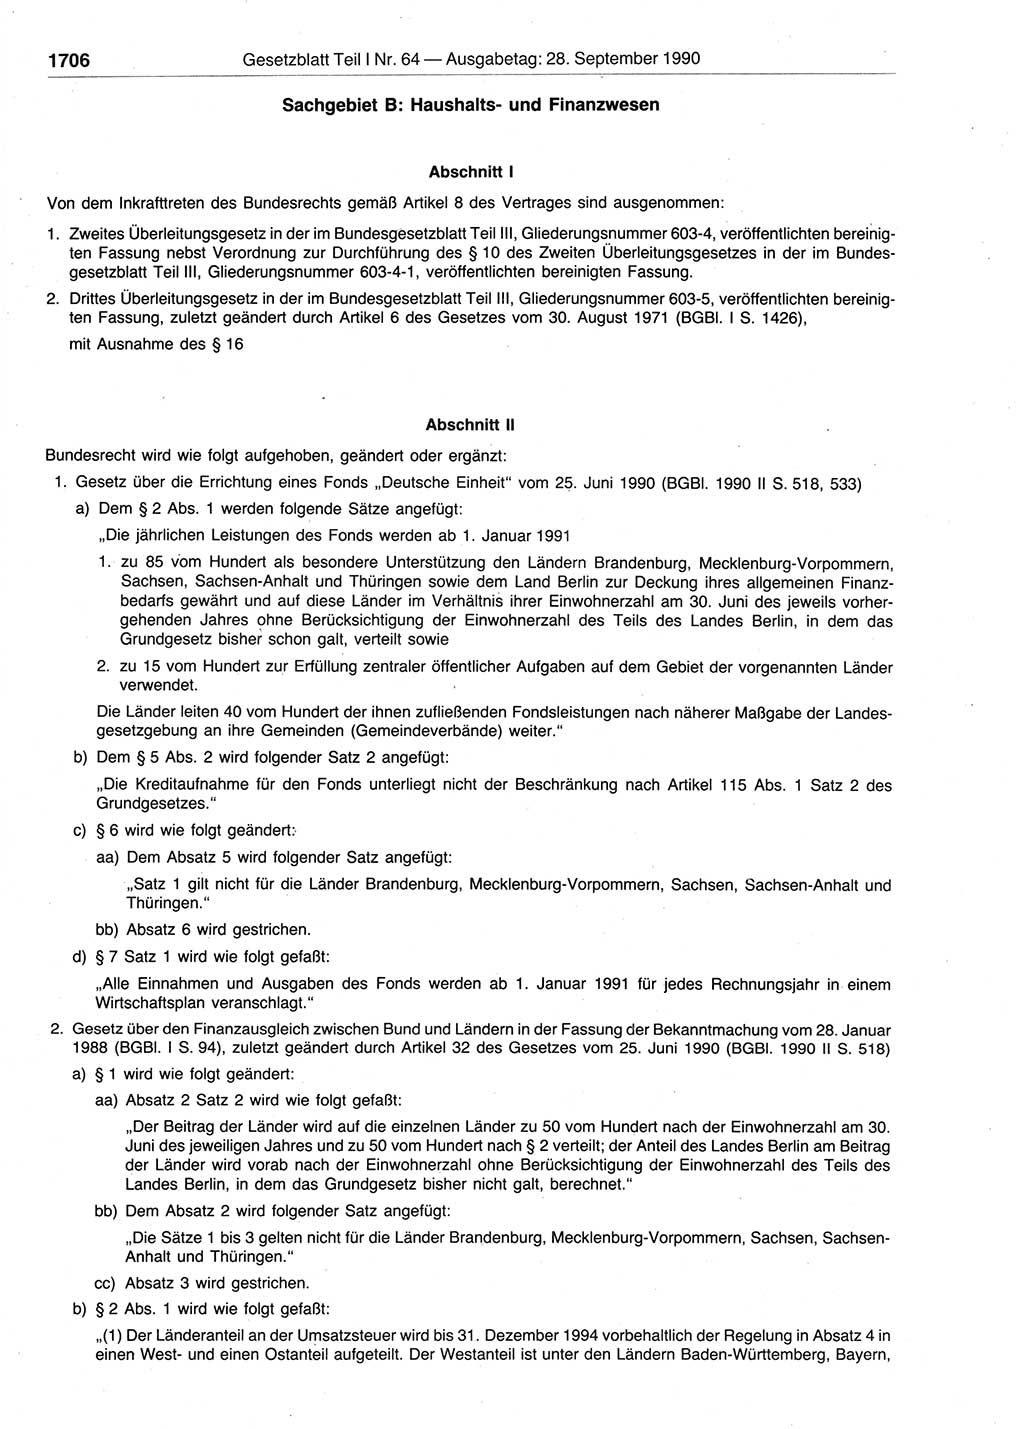 Gesetzblatt (GBl.) der Deutschen Demokratischen Republik (DDR) Teil Ⅰ 1990, Seite 1706 (GBl. DDR Ⅰ 1990, S. 1706)